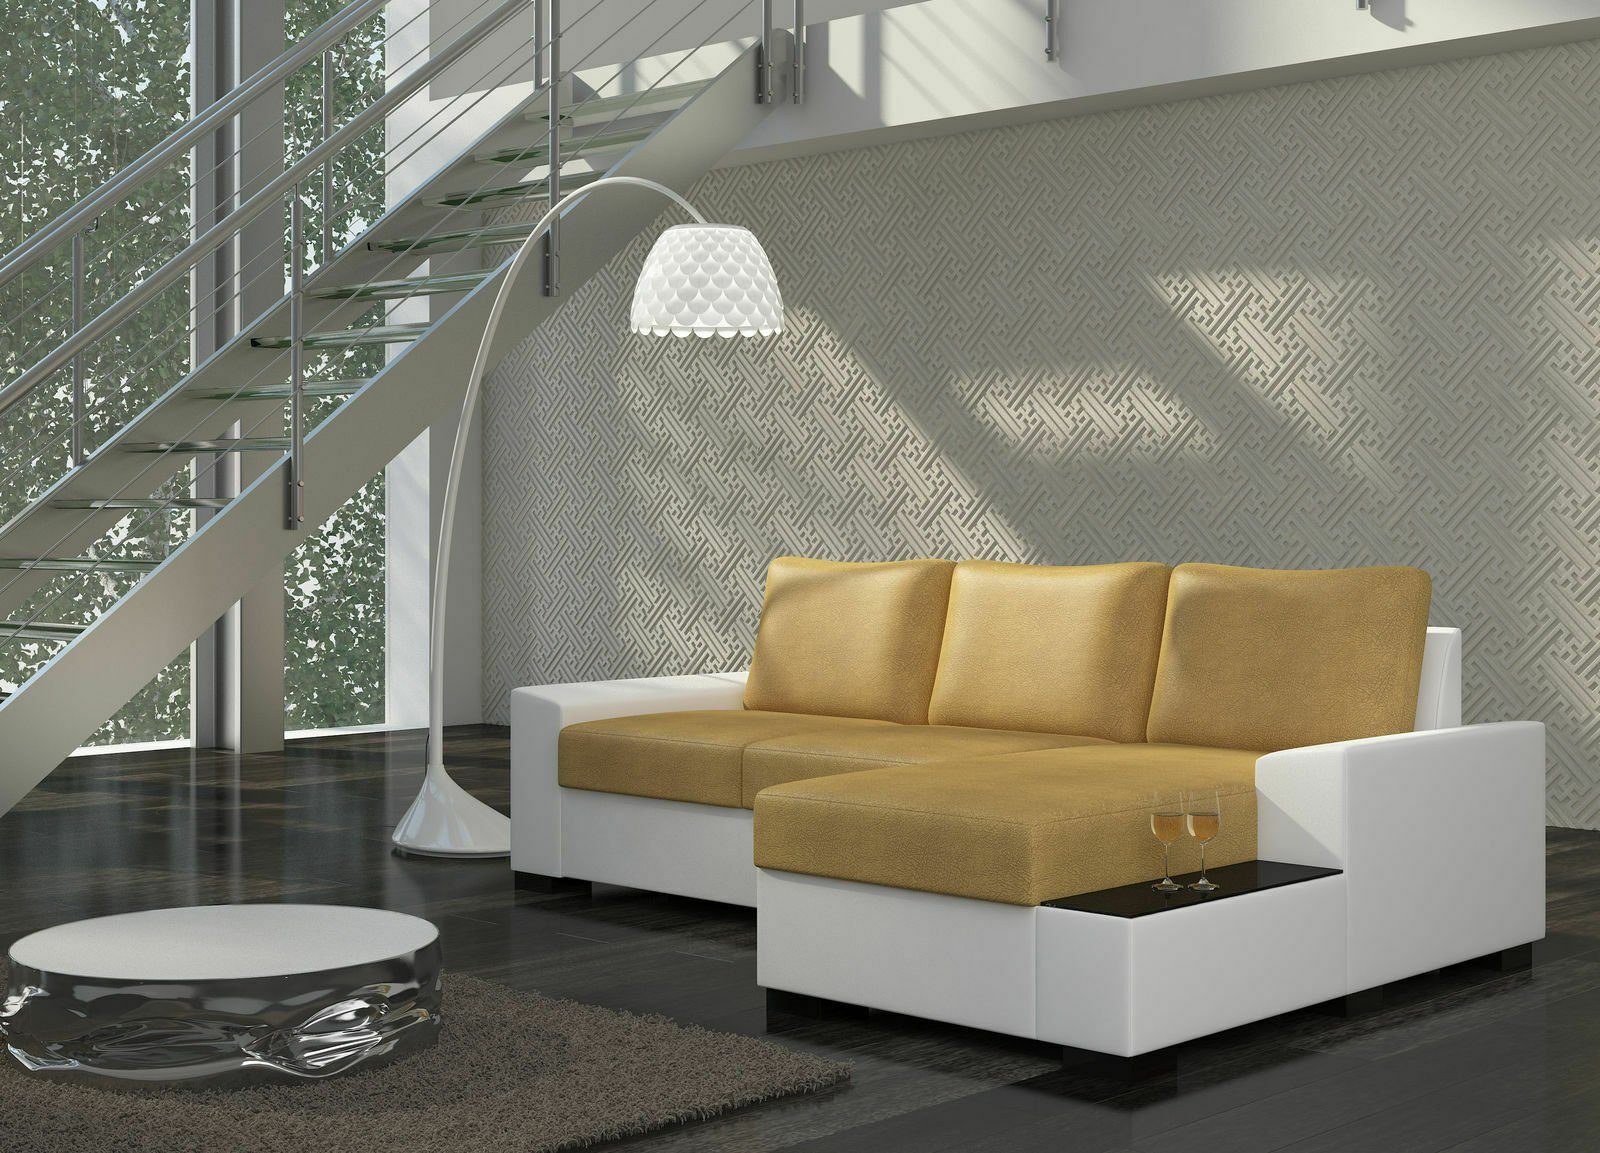 JVmoebel Ecksofa Design Ecksofa Schlafsofa Bettfunktion Sofa Couch Leder Polster, Mit Bettfunktion Hellbraun / Weiß